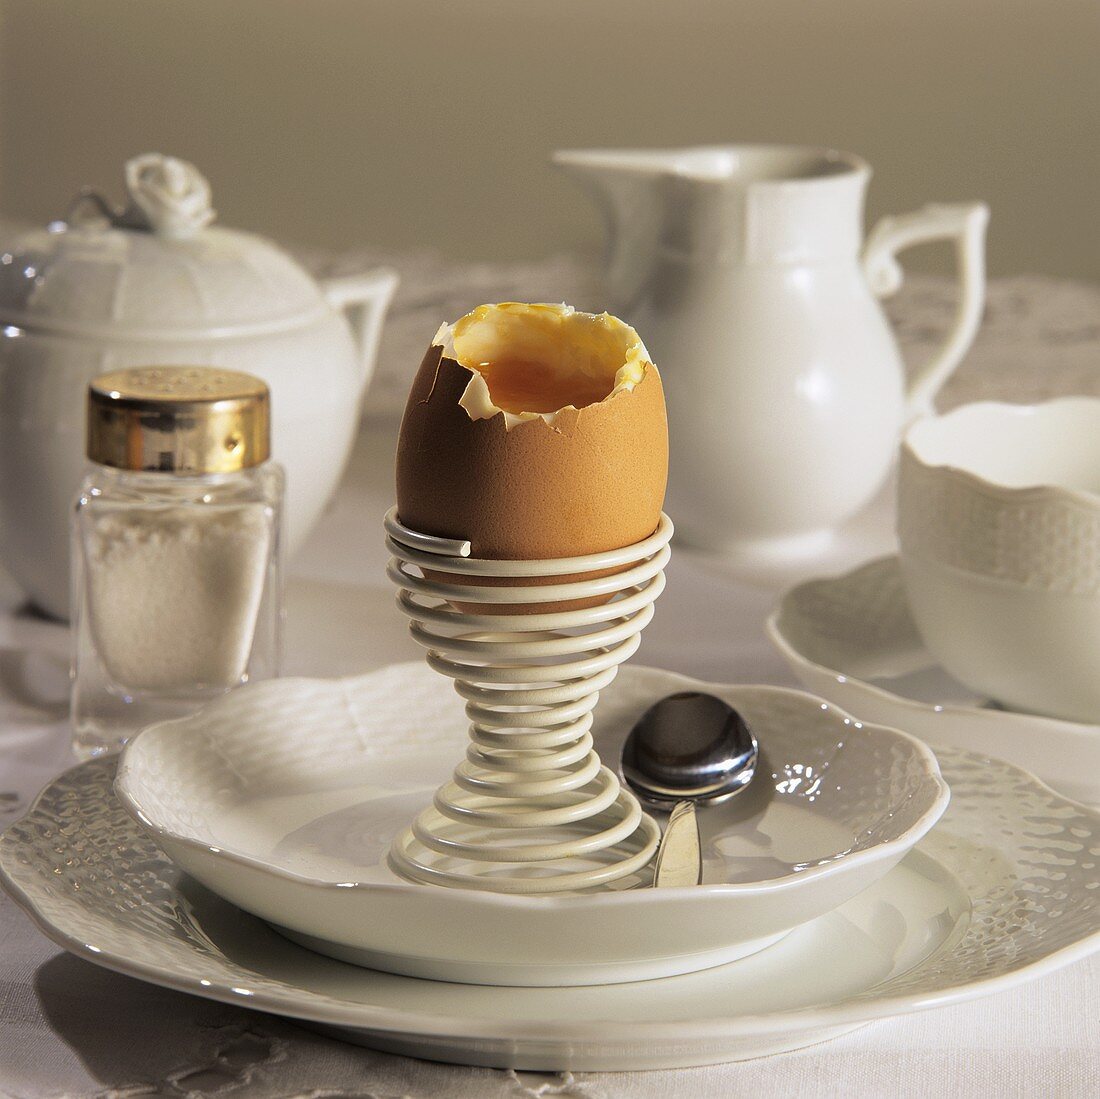 White breakfast setting with breakfast egg & salt on table